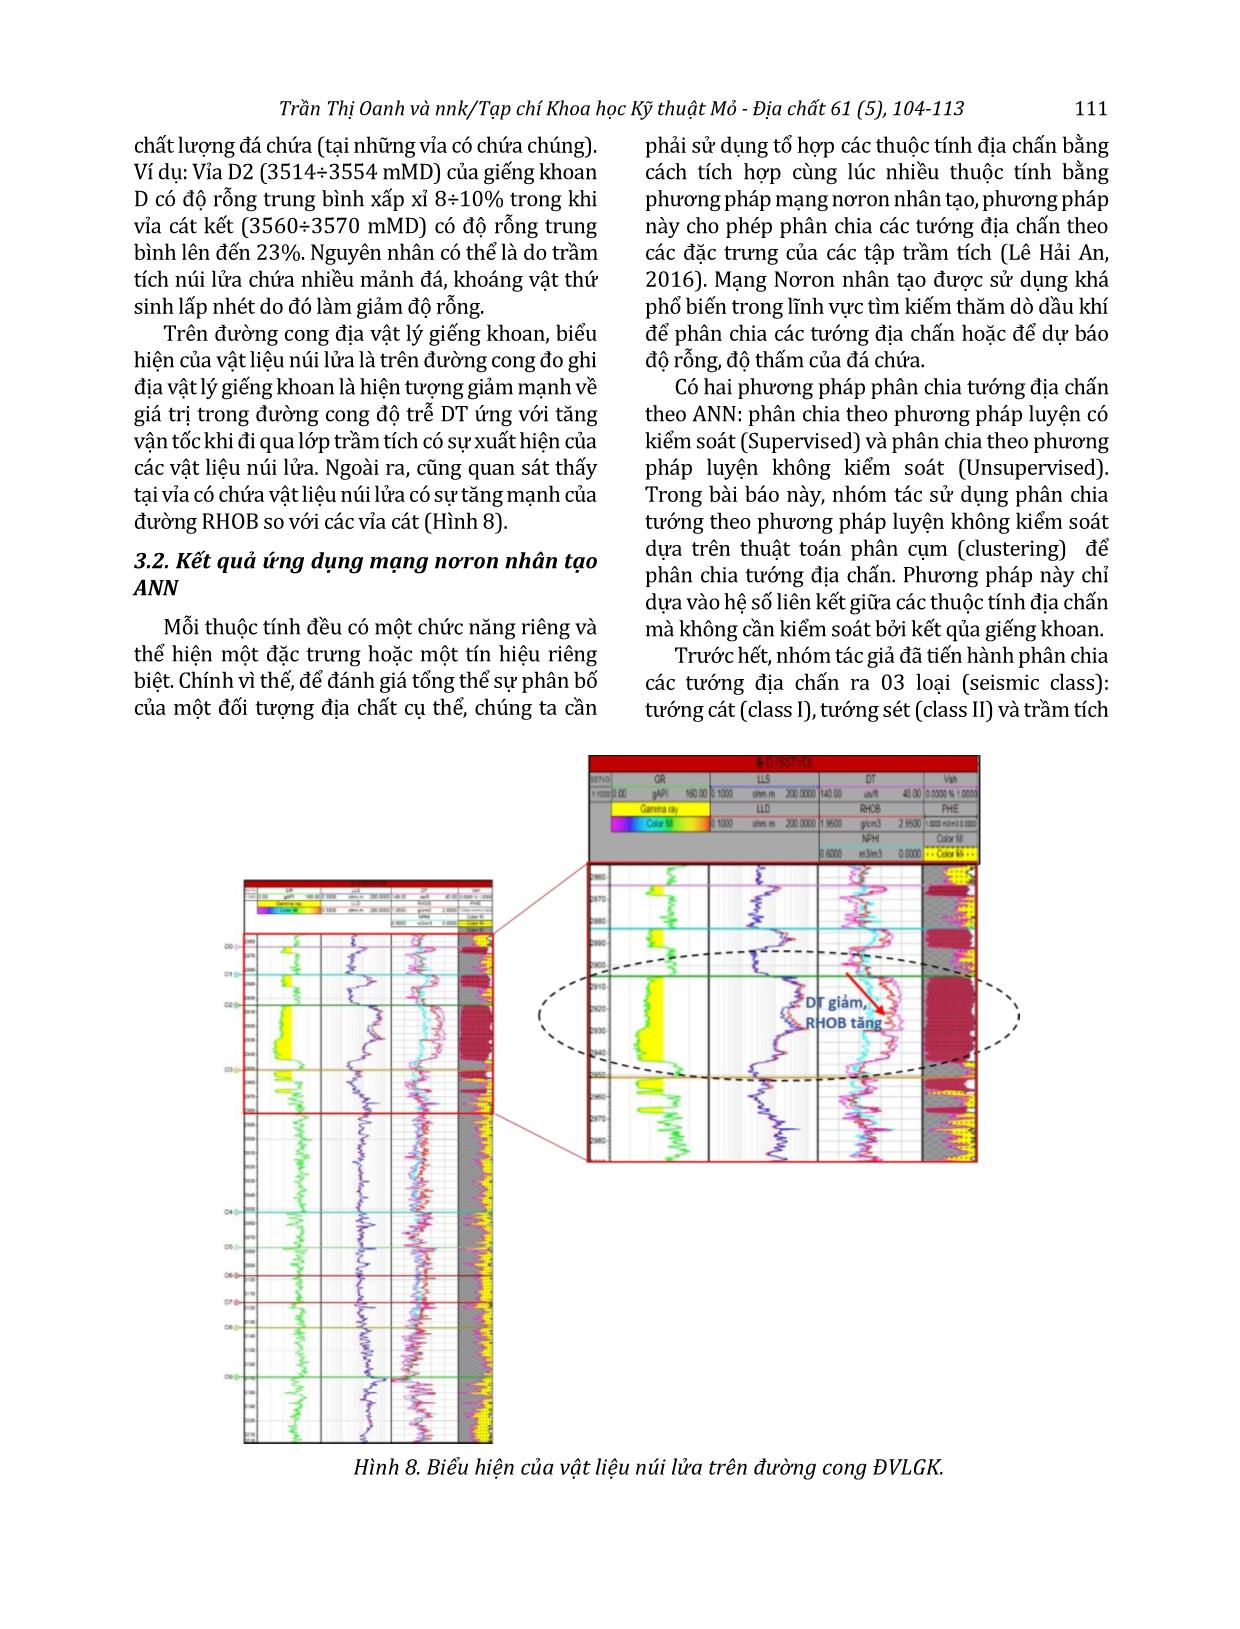 Ứng dụng mạng trí tuệ nhân tạo dự báo phân bố vật liệu núi lửa trong tập D, mỏ X, bể Cửu Long trang 8